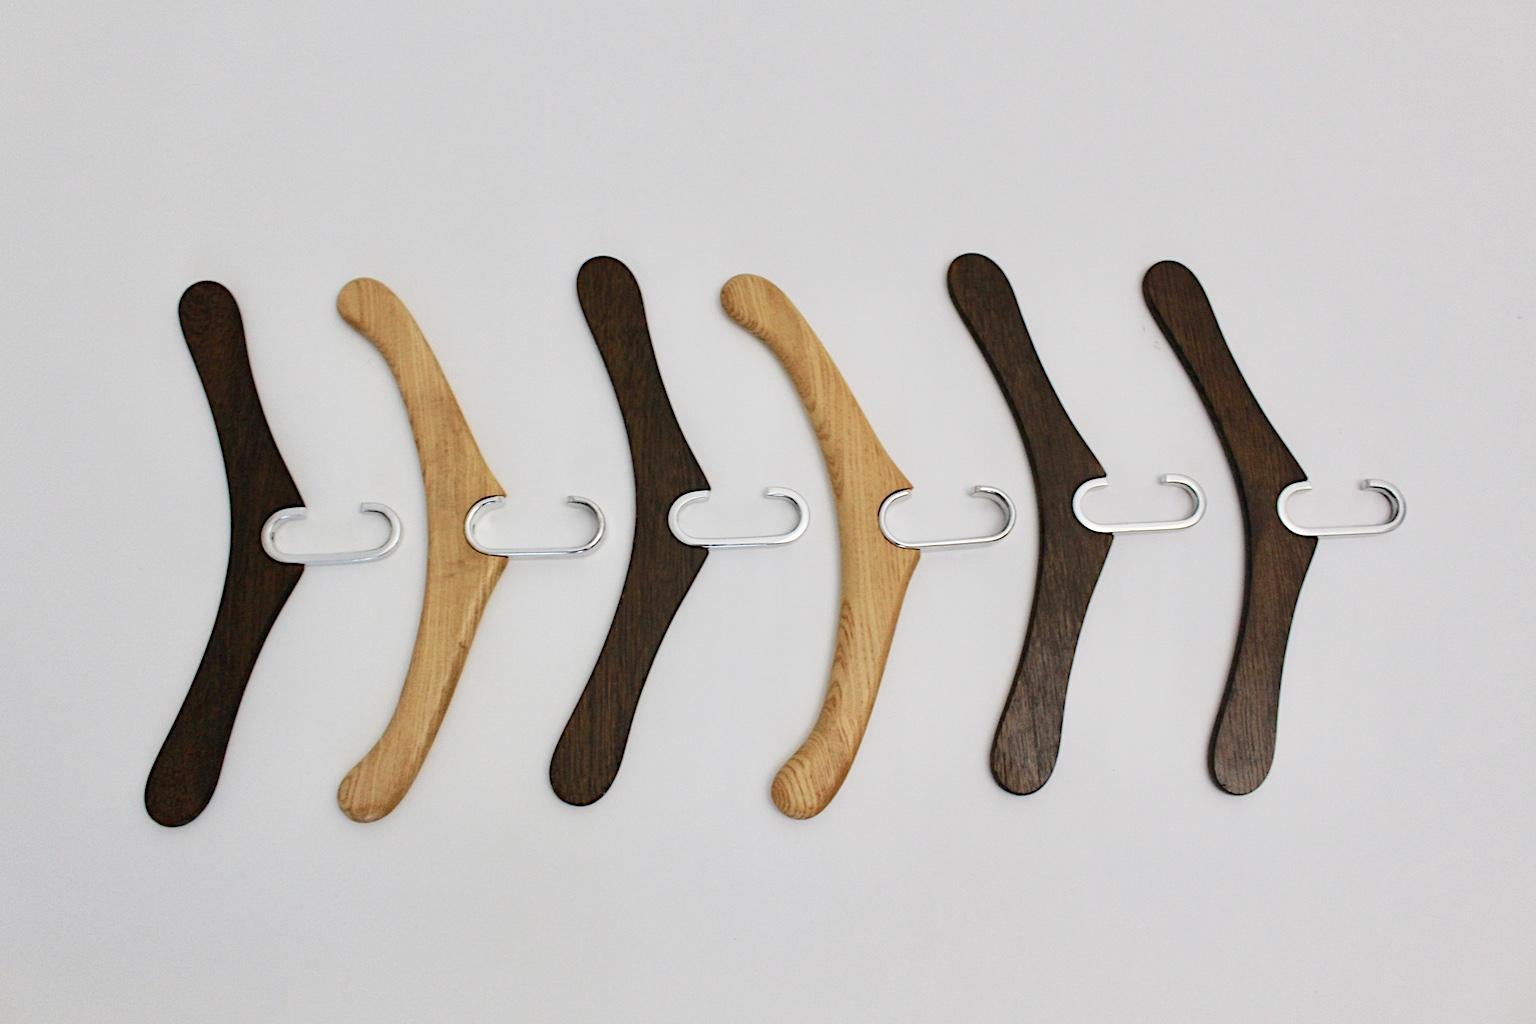 Ein Satz von sechs modernistischen Kleiderbügeln aus Eichenholz, die um 1970 in Österreich entworfen und hergestellt wurden.
Zwei Stücke wurden aus farblos lackiertem Eichenholz und vier Stücke aus braun gebeiztem Eichenholz hergestellt. Alle sechs